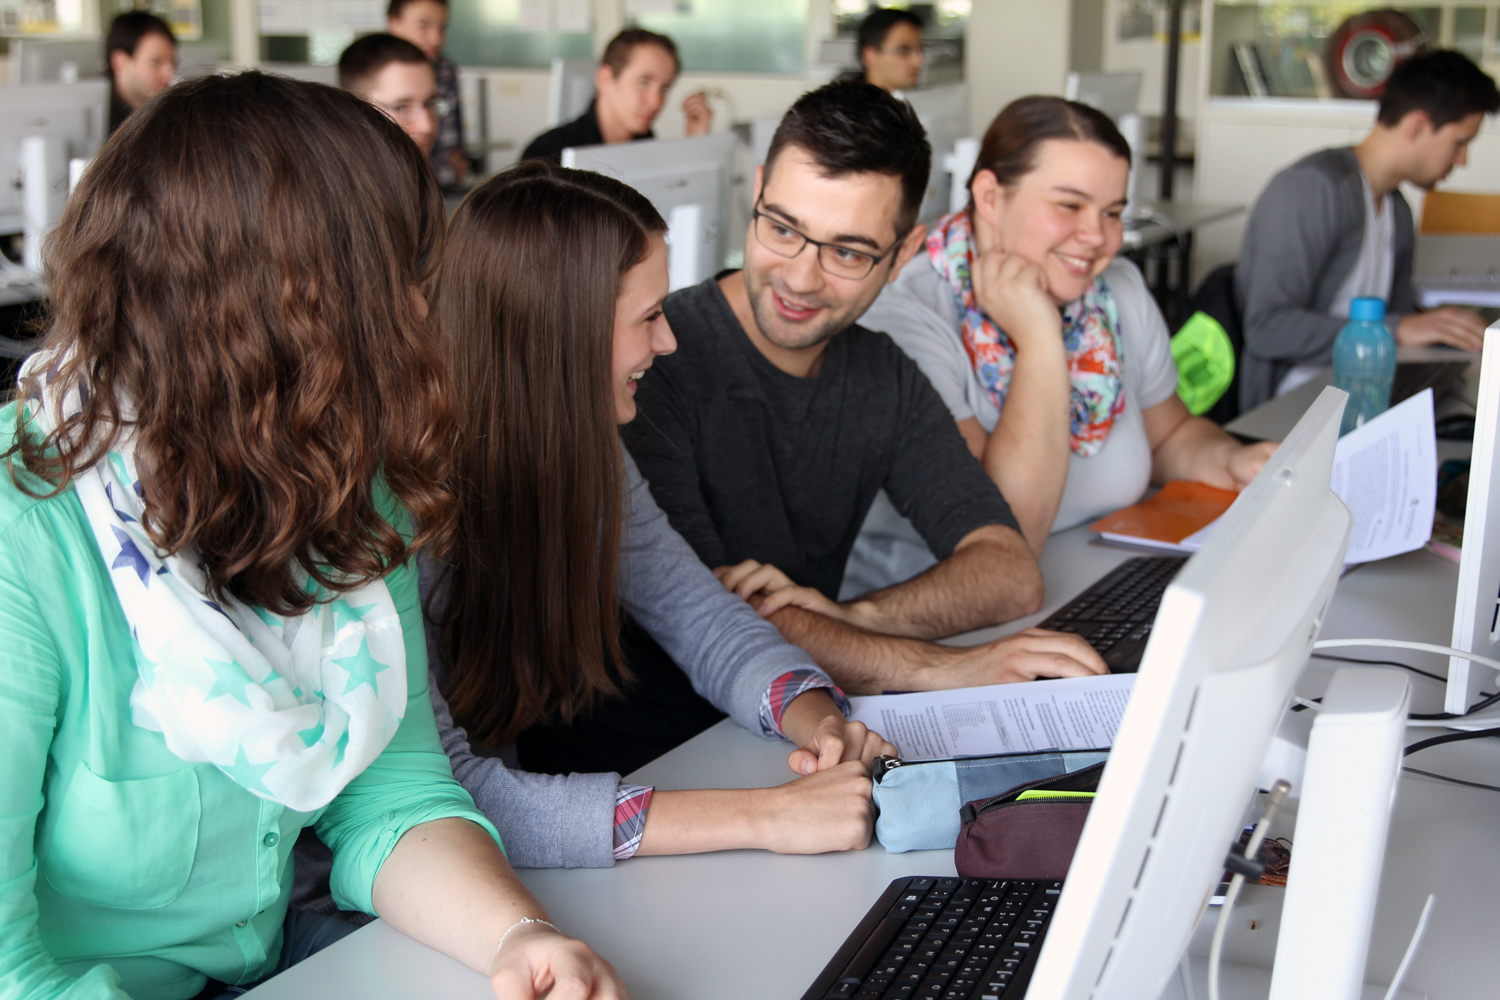 Lachende weibliche und männliche Studierende sitzen vor PC-Bildschirmen und unterhalten sich.